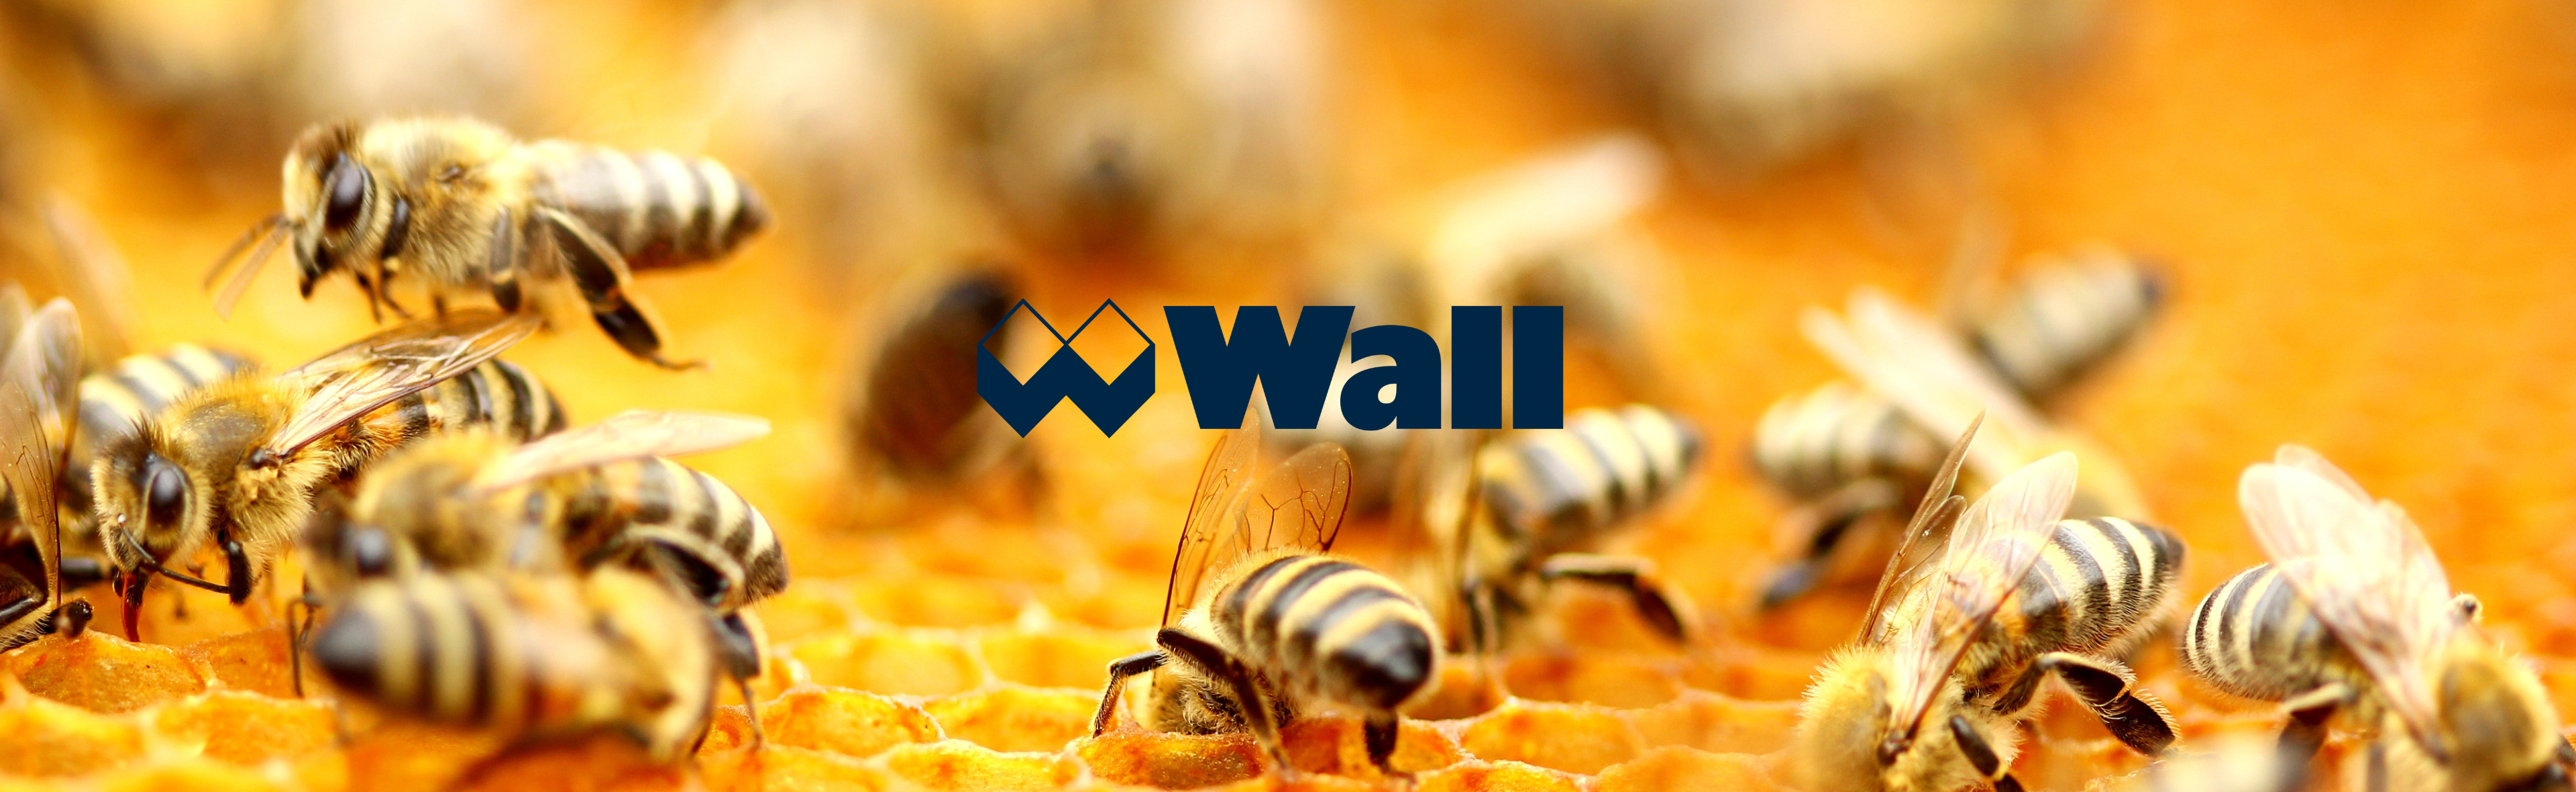 Bienenpatenschaft Wall